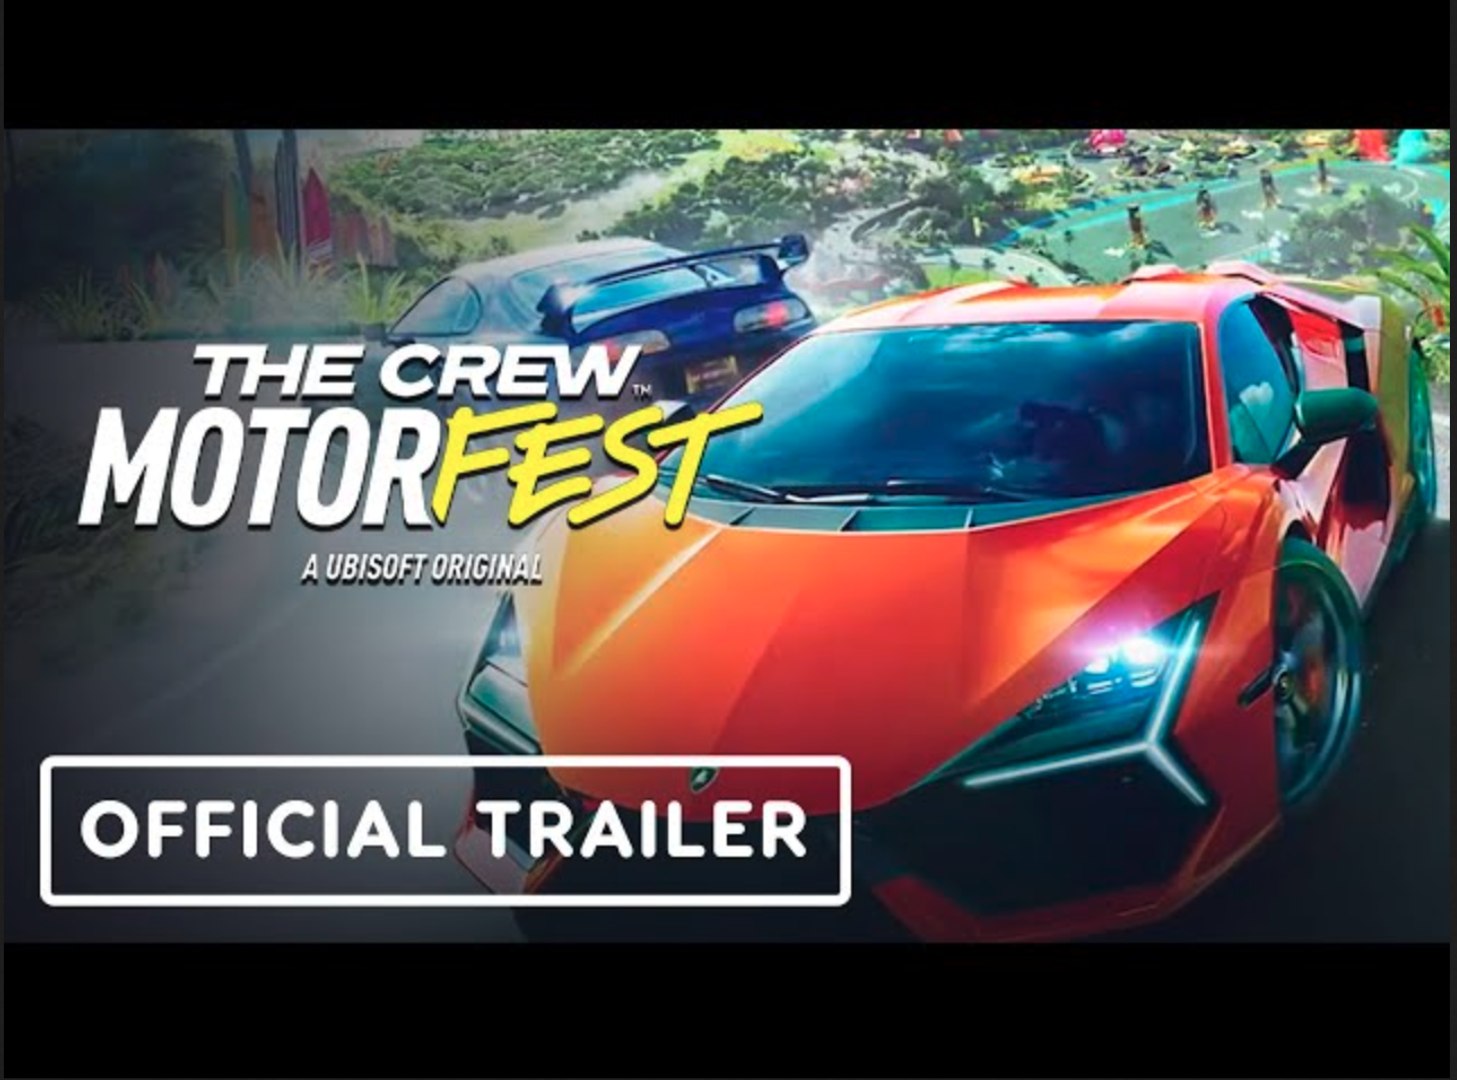 Forza Horizon 3 - Accolades Trailer